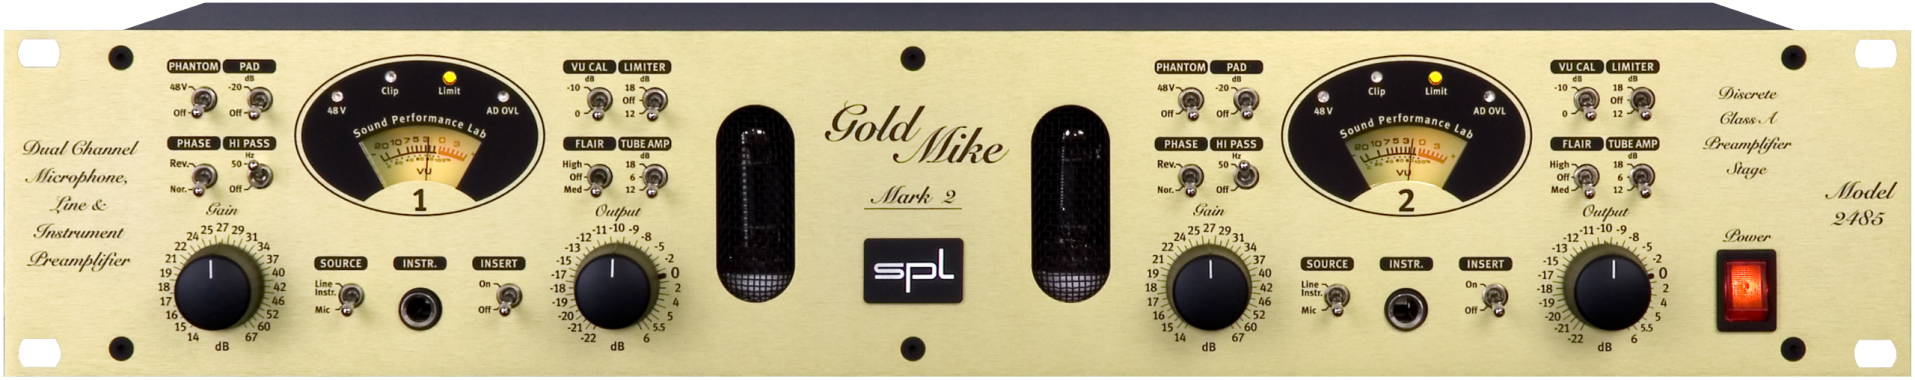 GoldMike Mk2